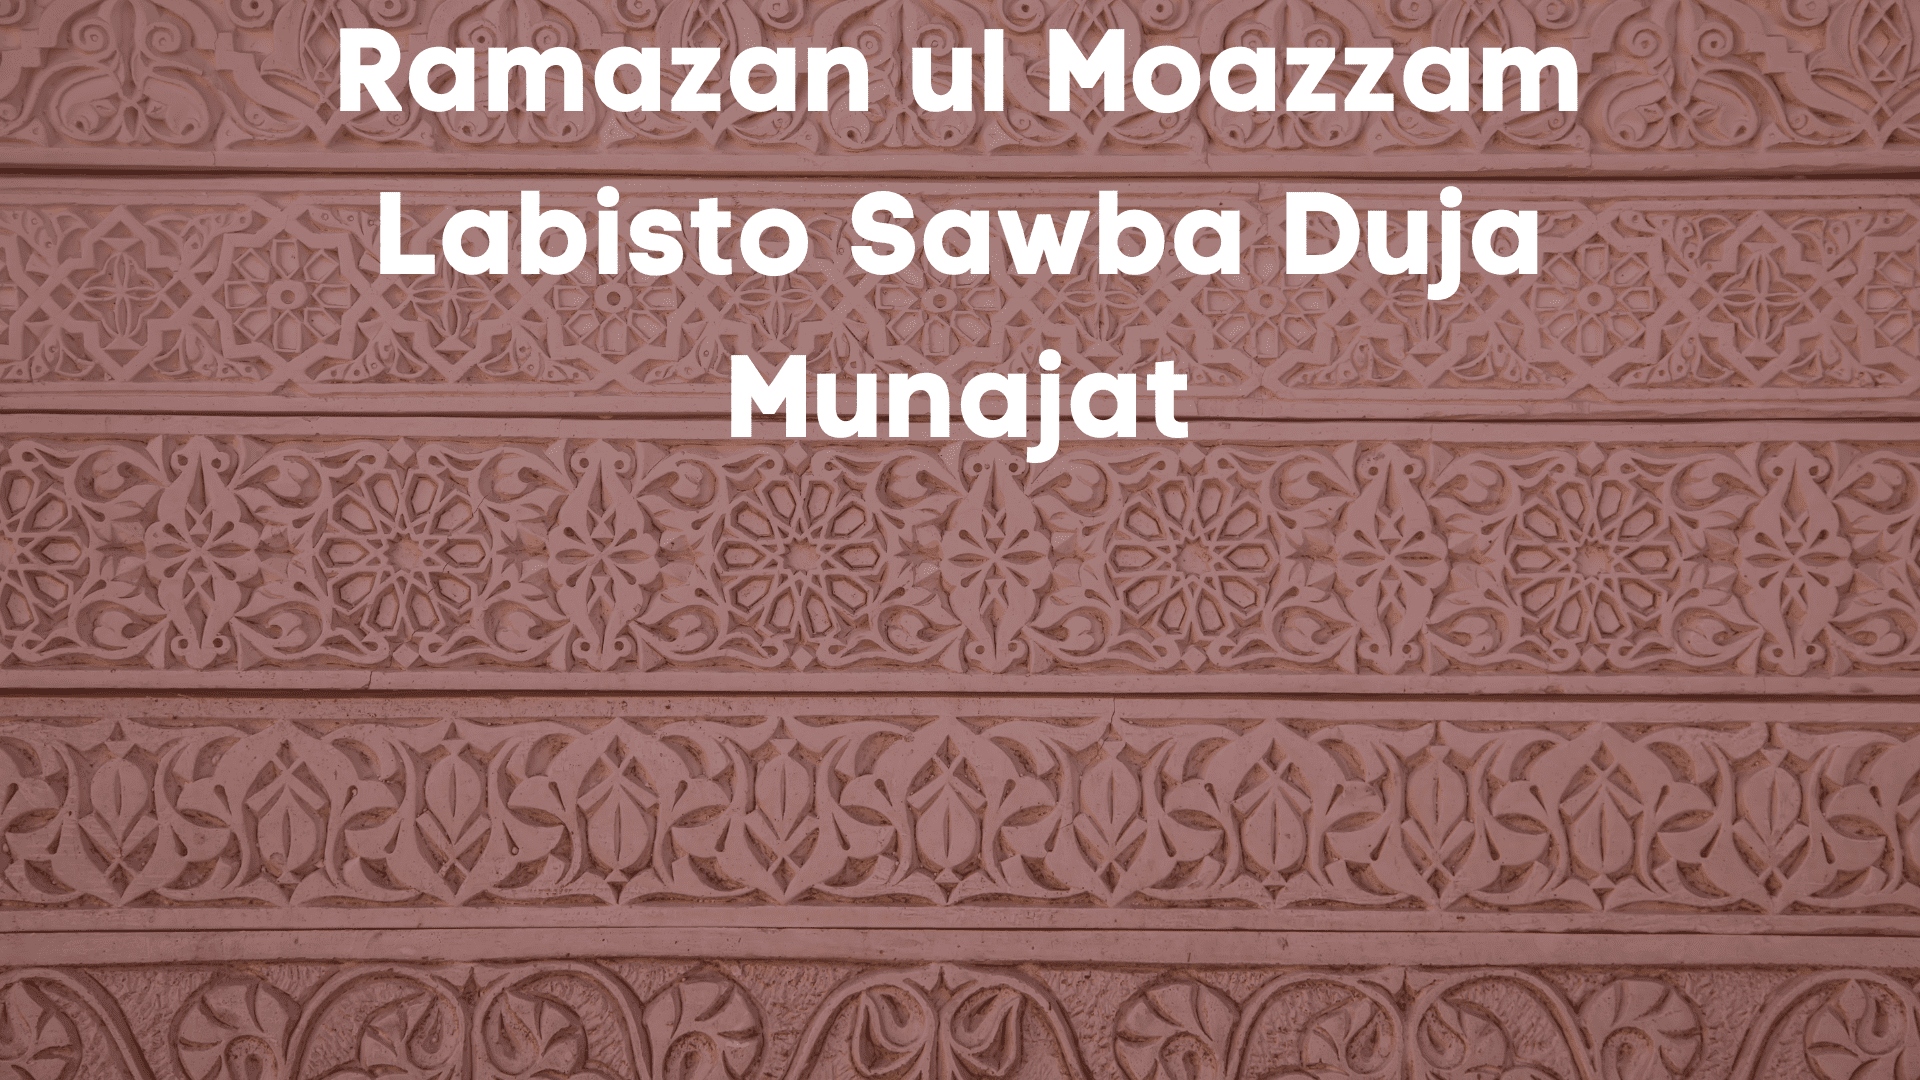 Ramazan ul Moazzam Labisto Sawba Duja Munajat